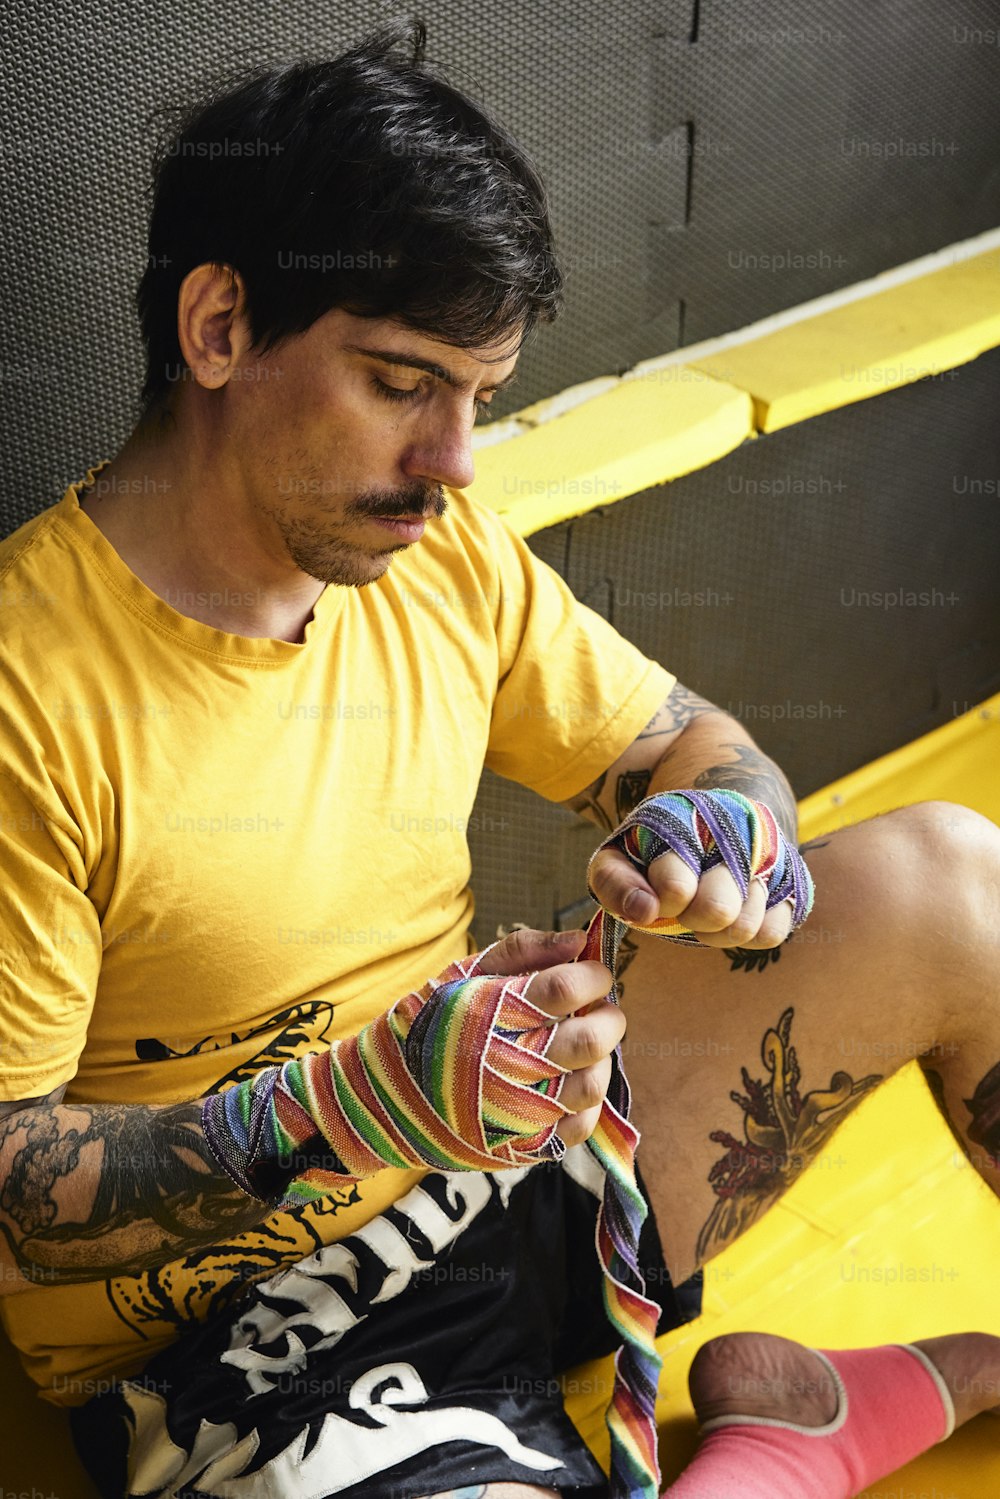 Un hombre sentado en un banco amarillo sosteniendo un par de calcetines de colores